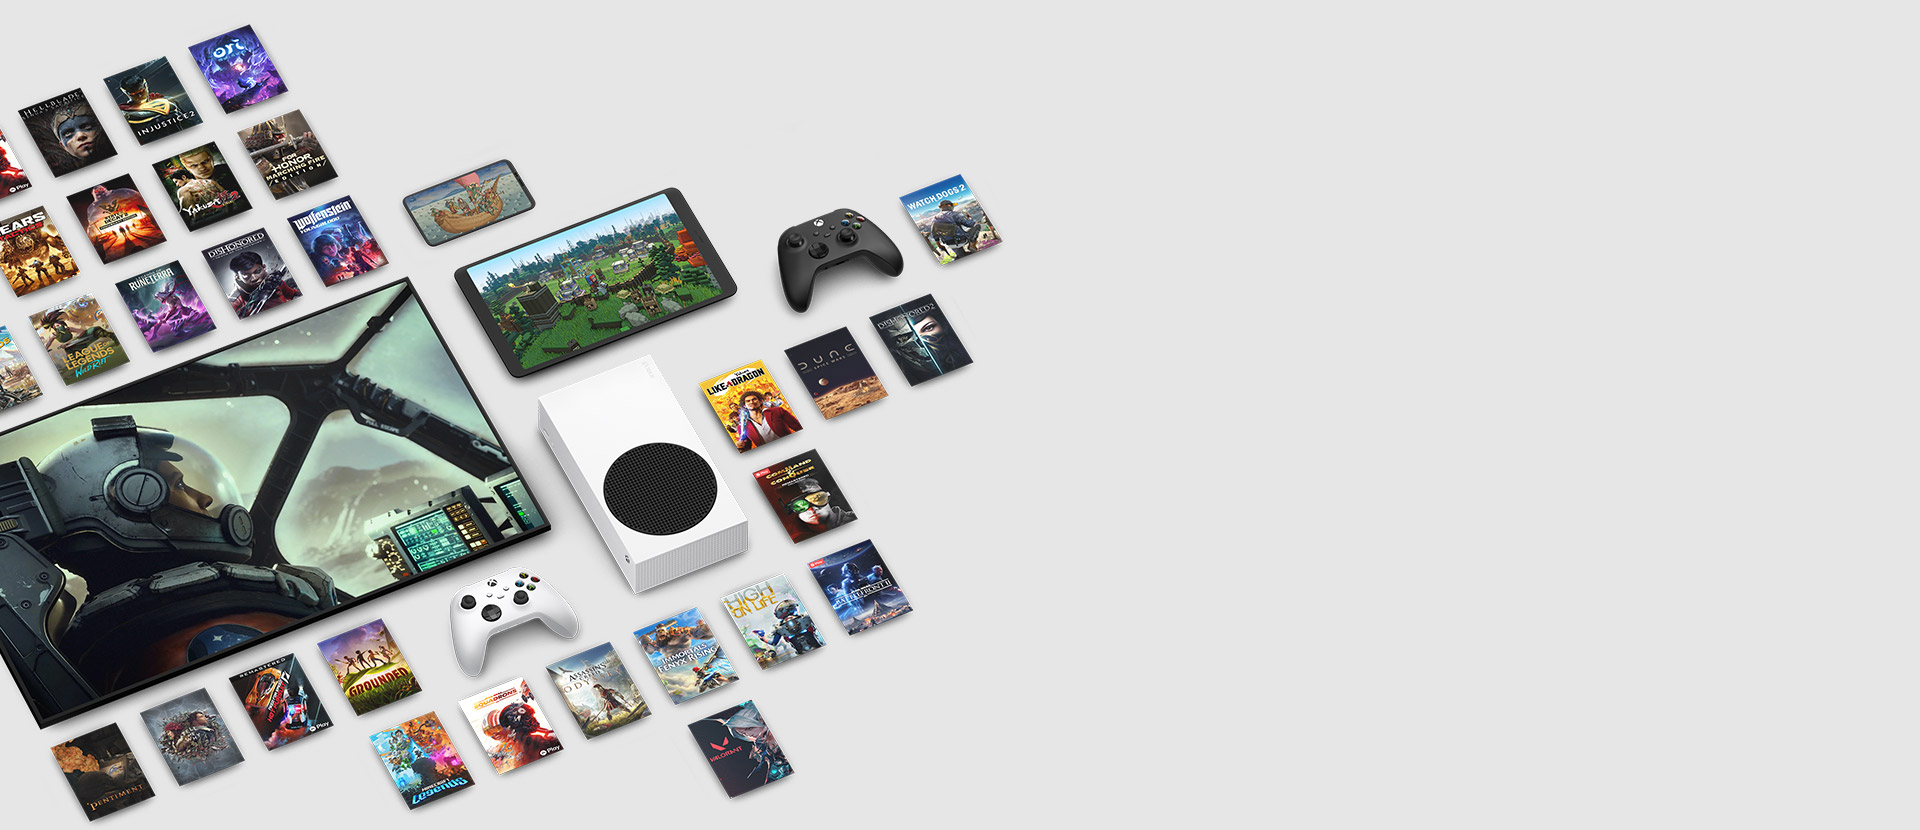 Ilustrações de vários jogos disponíveis agora com o Xbox Game Pass Ultimate ao redor de vários dispositivos, incluindo consola, telemóvel, tablet, Smart TV e comandos.